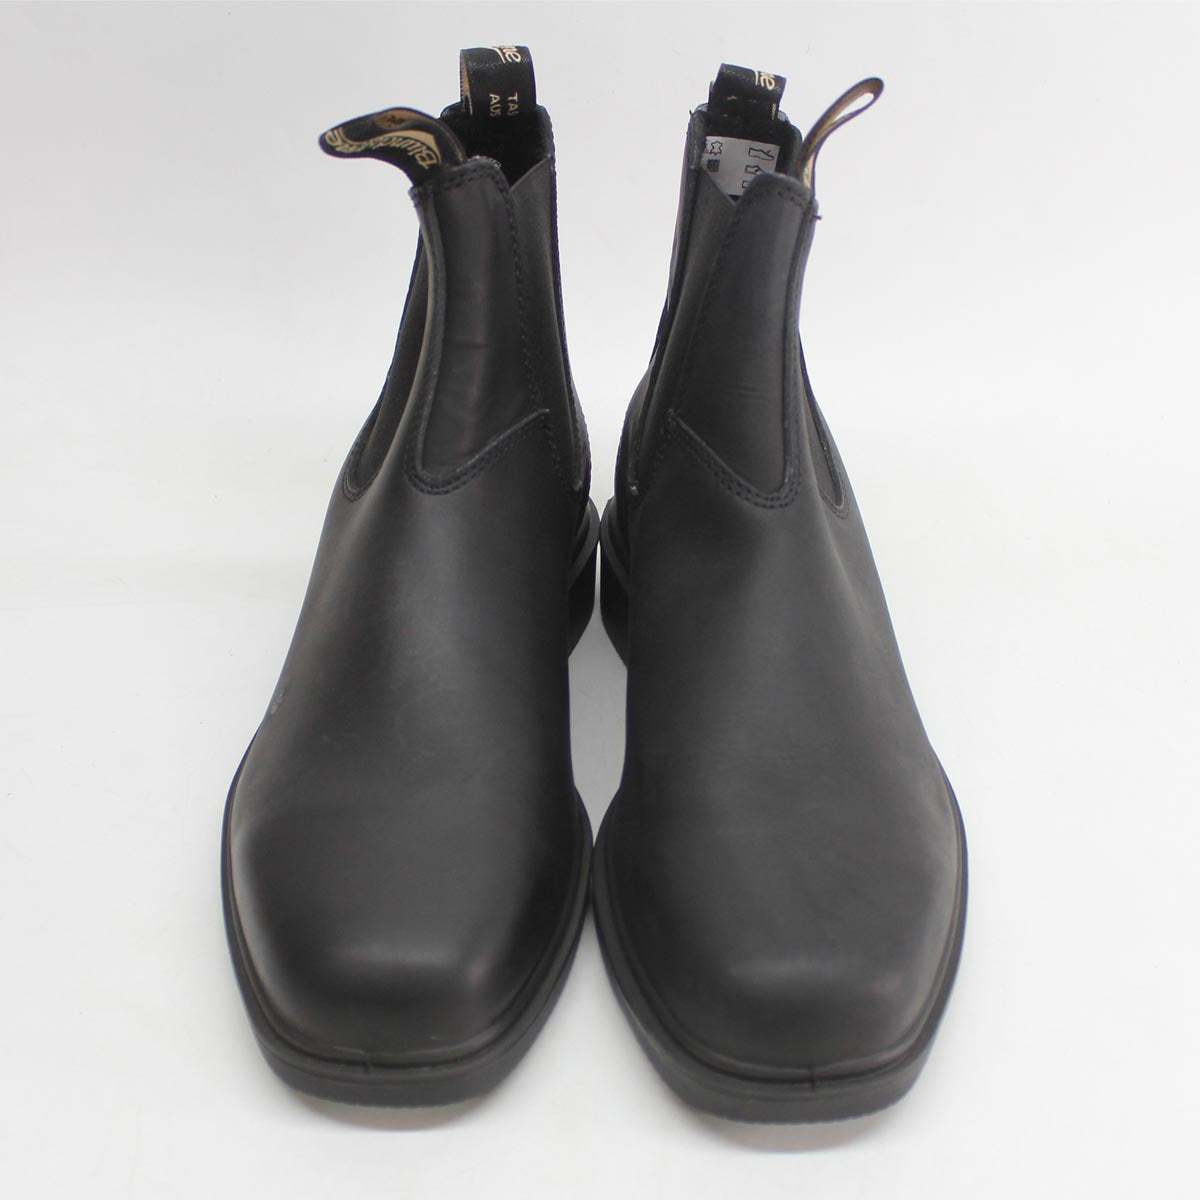 Blundstone 063 Black Unisex Leather Slip-On Square-toe Chelsea Boots - UK 8.5